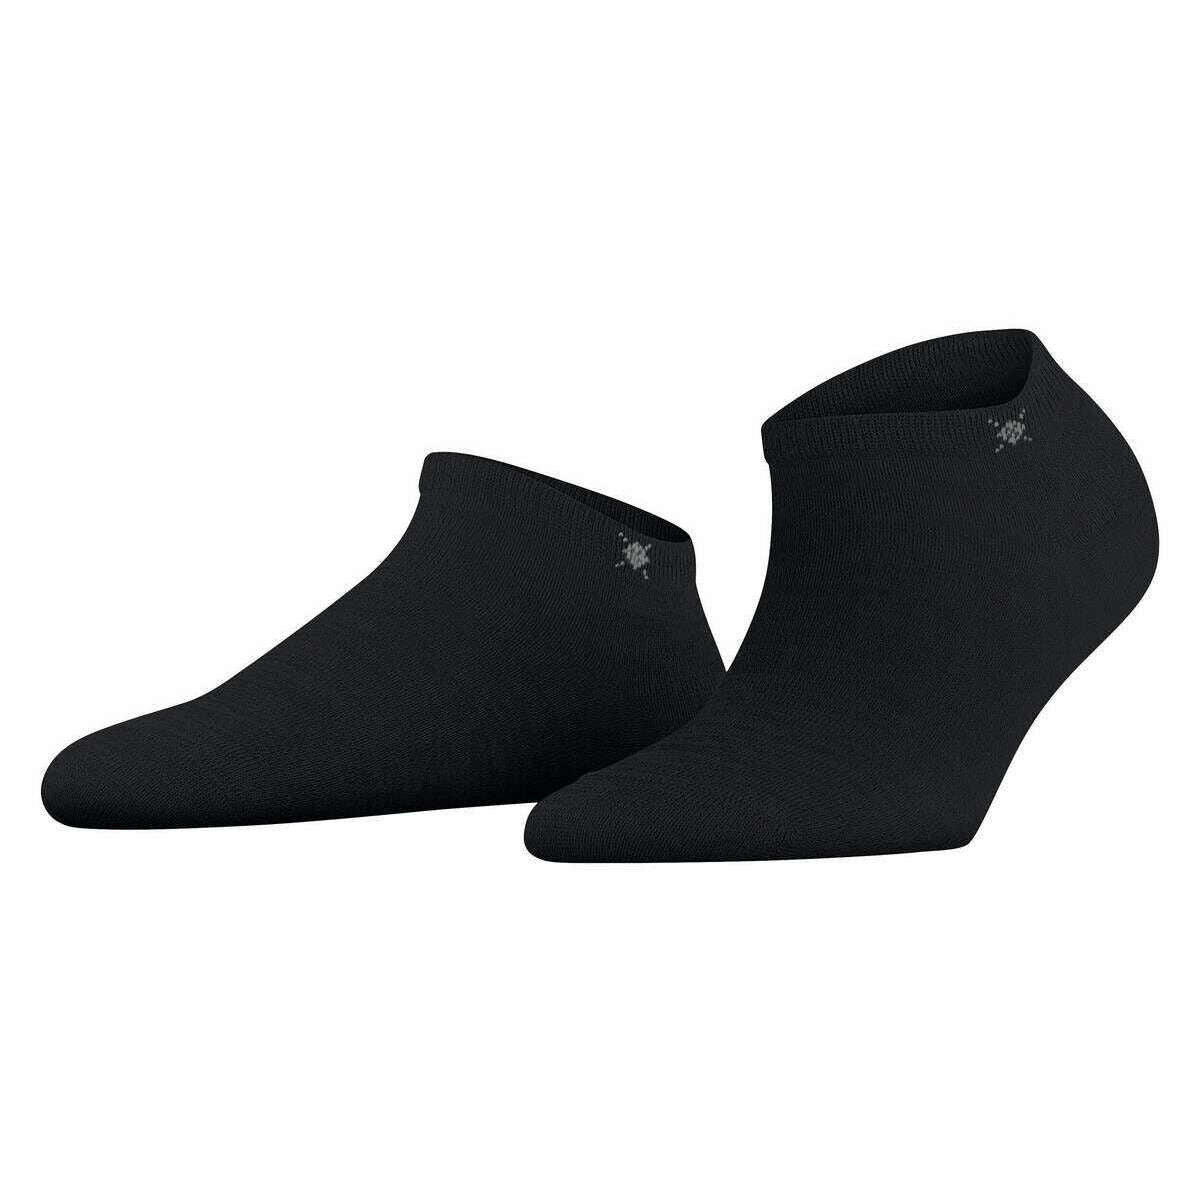 Burlington Soho Vibes Socks - Black